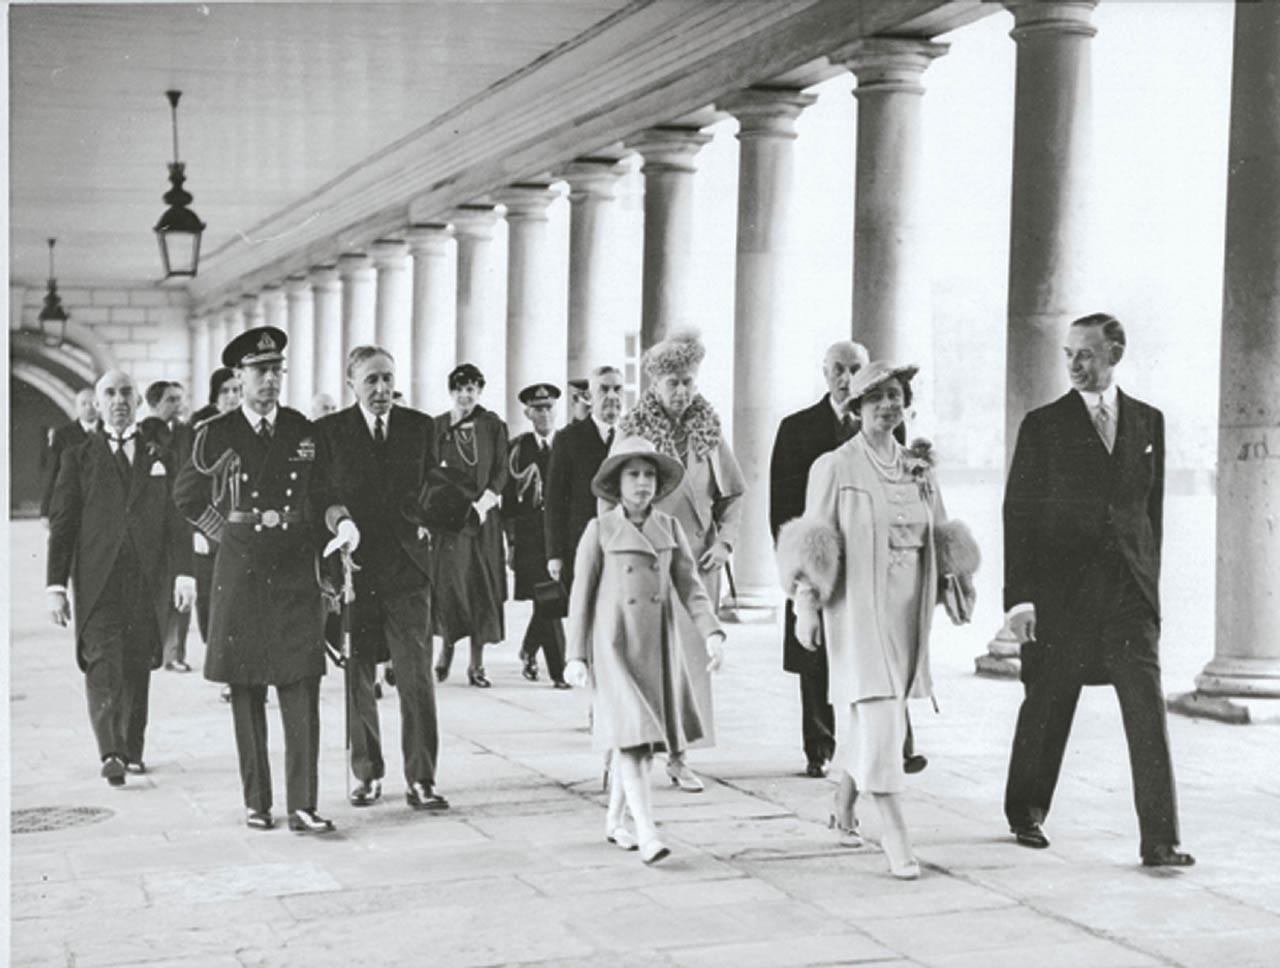 An image showing 'Queen Elizabeth II, 1926–2022'